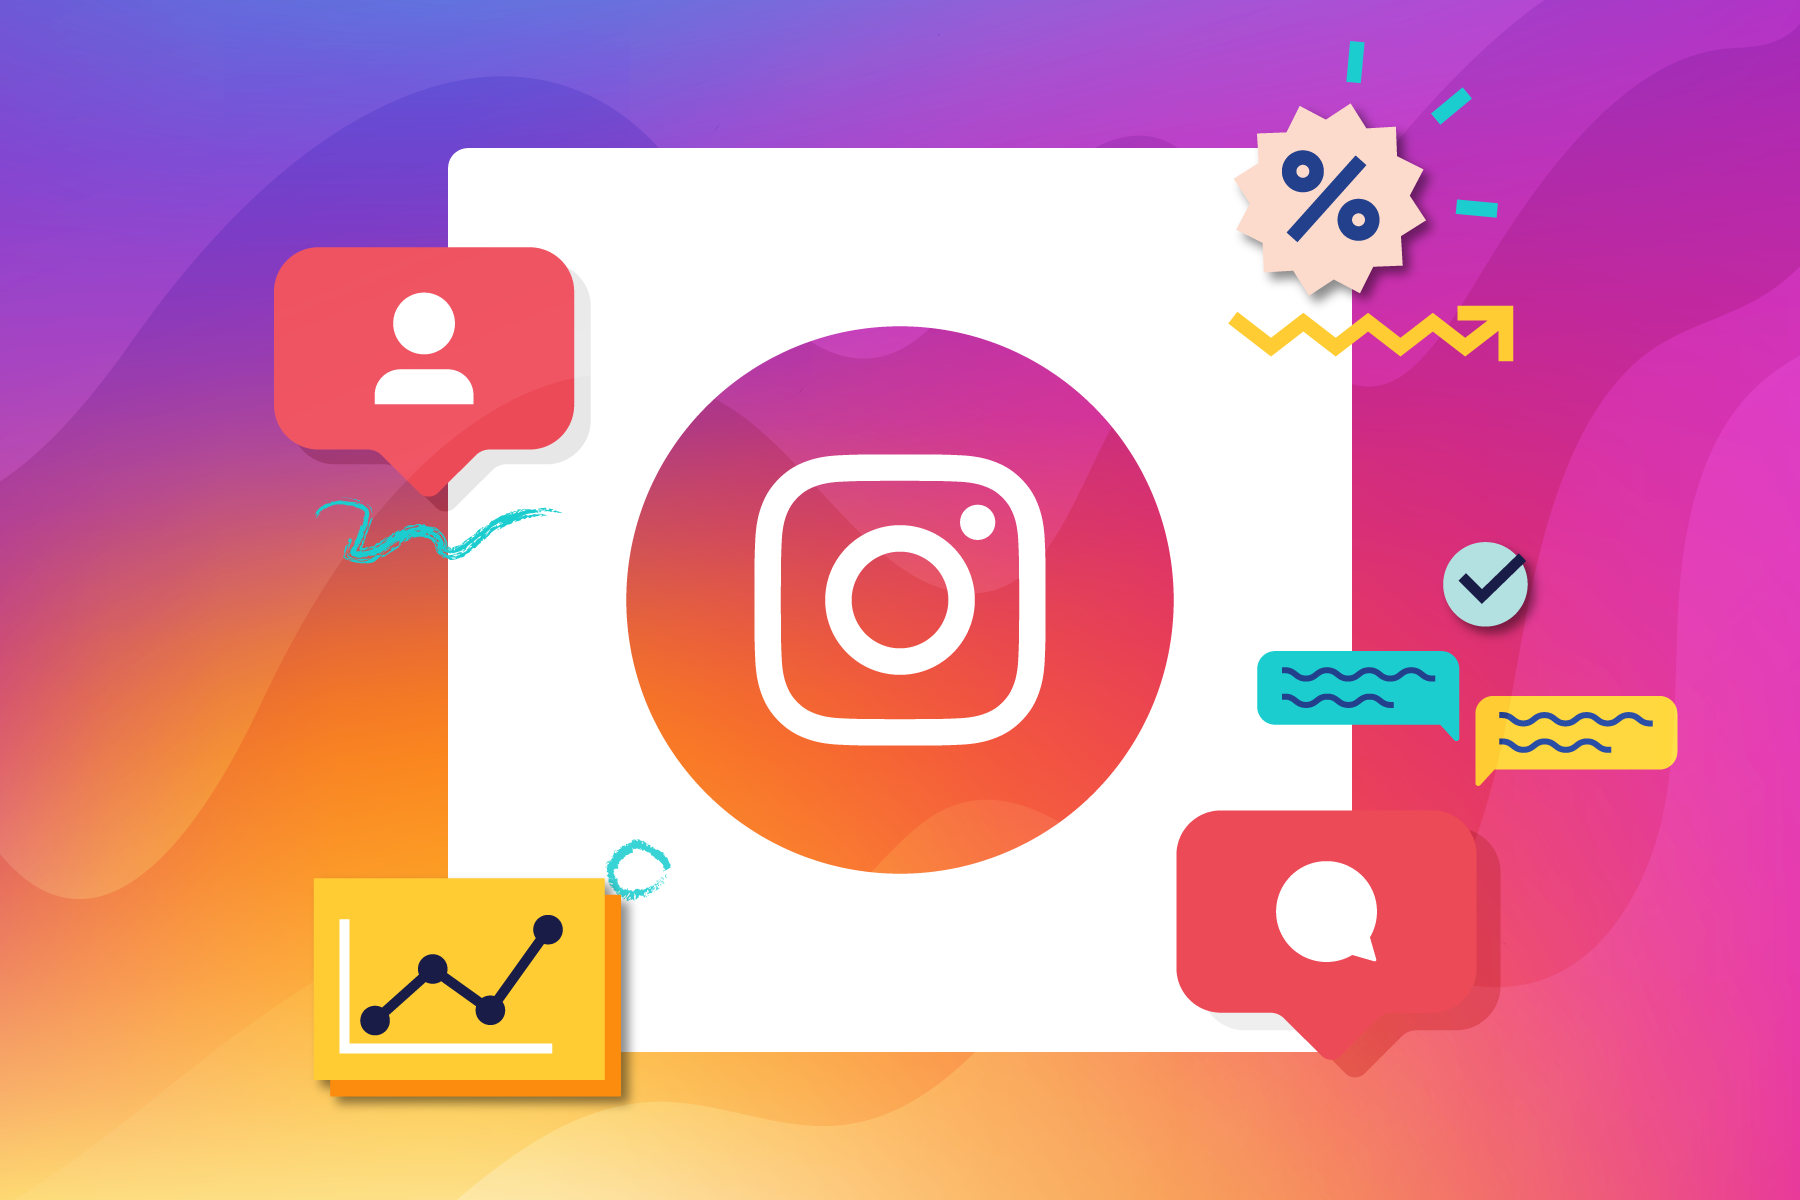 Come togliere il profilo aziendale e professionale per tornare all’account personale su Instagram